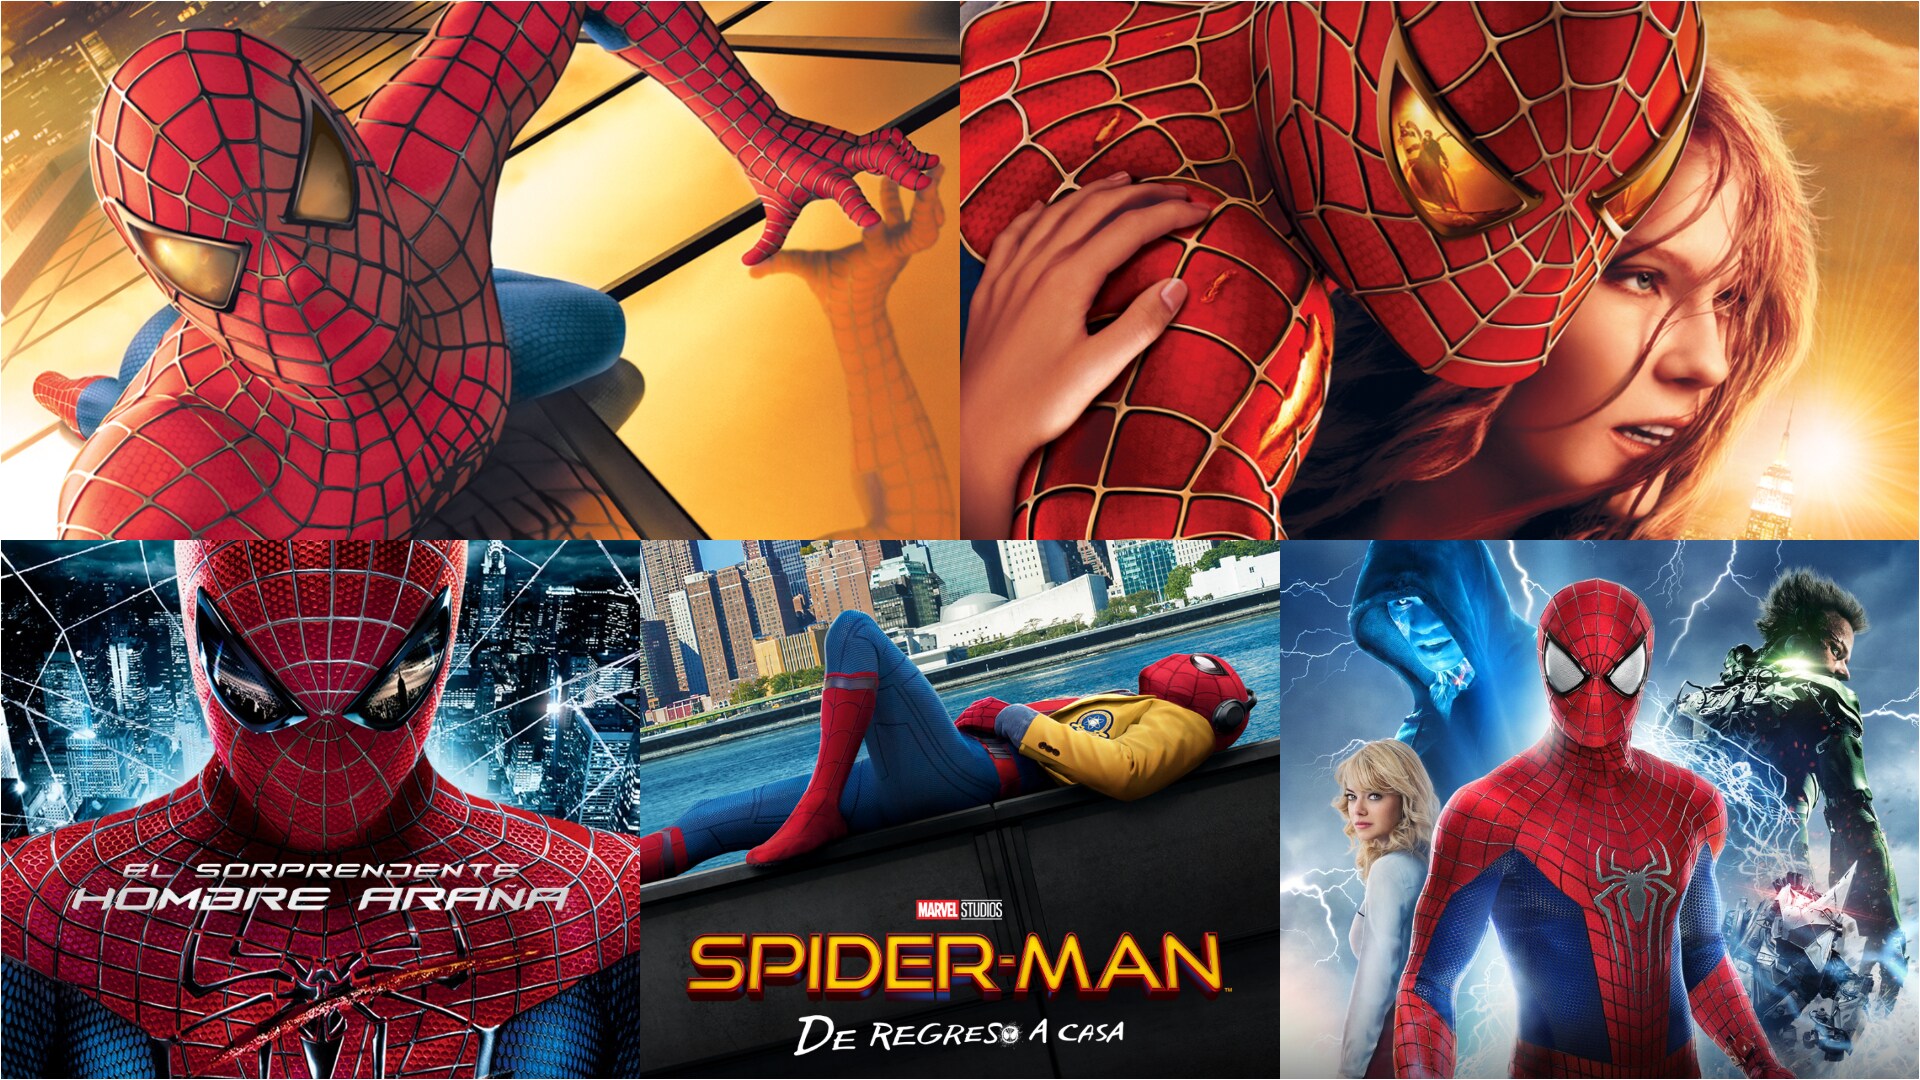 Qué películas de Spider-Man llegarán a Disney+?